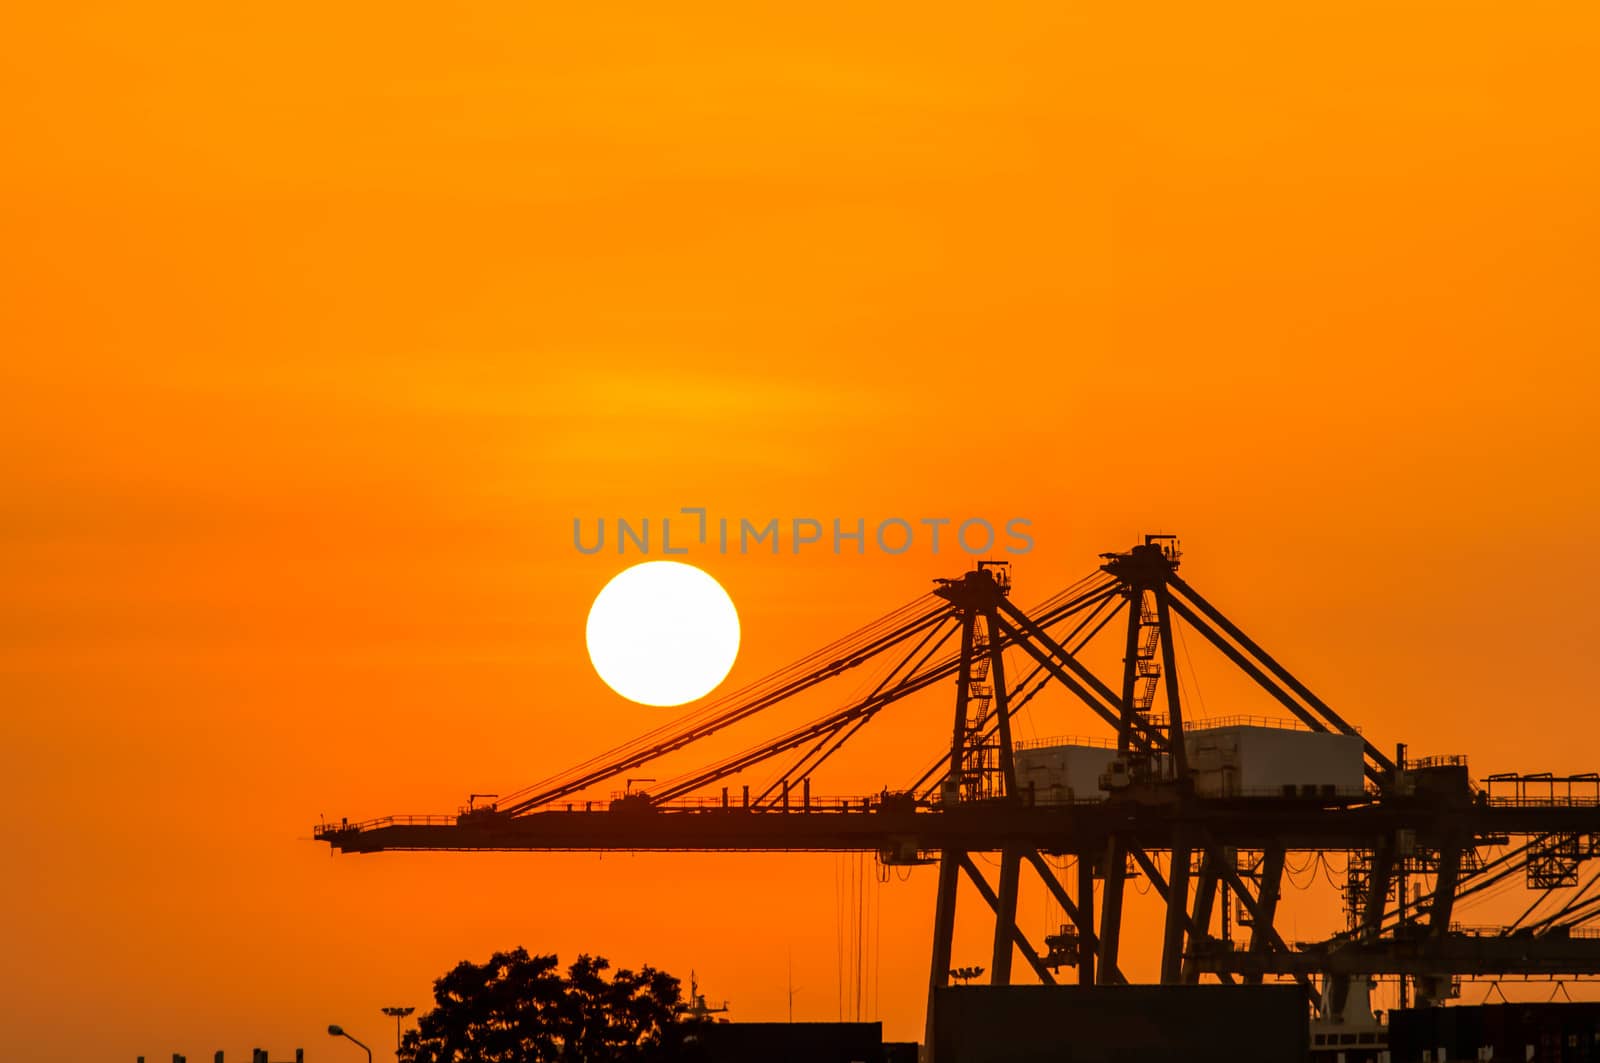 Crane in the industrial port  by Sorapop